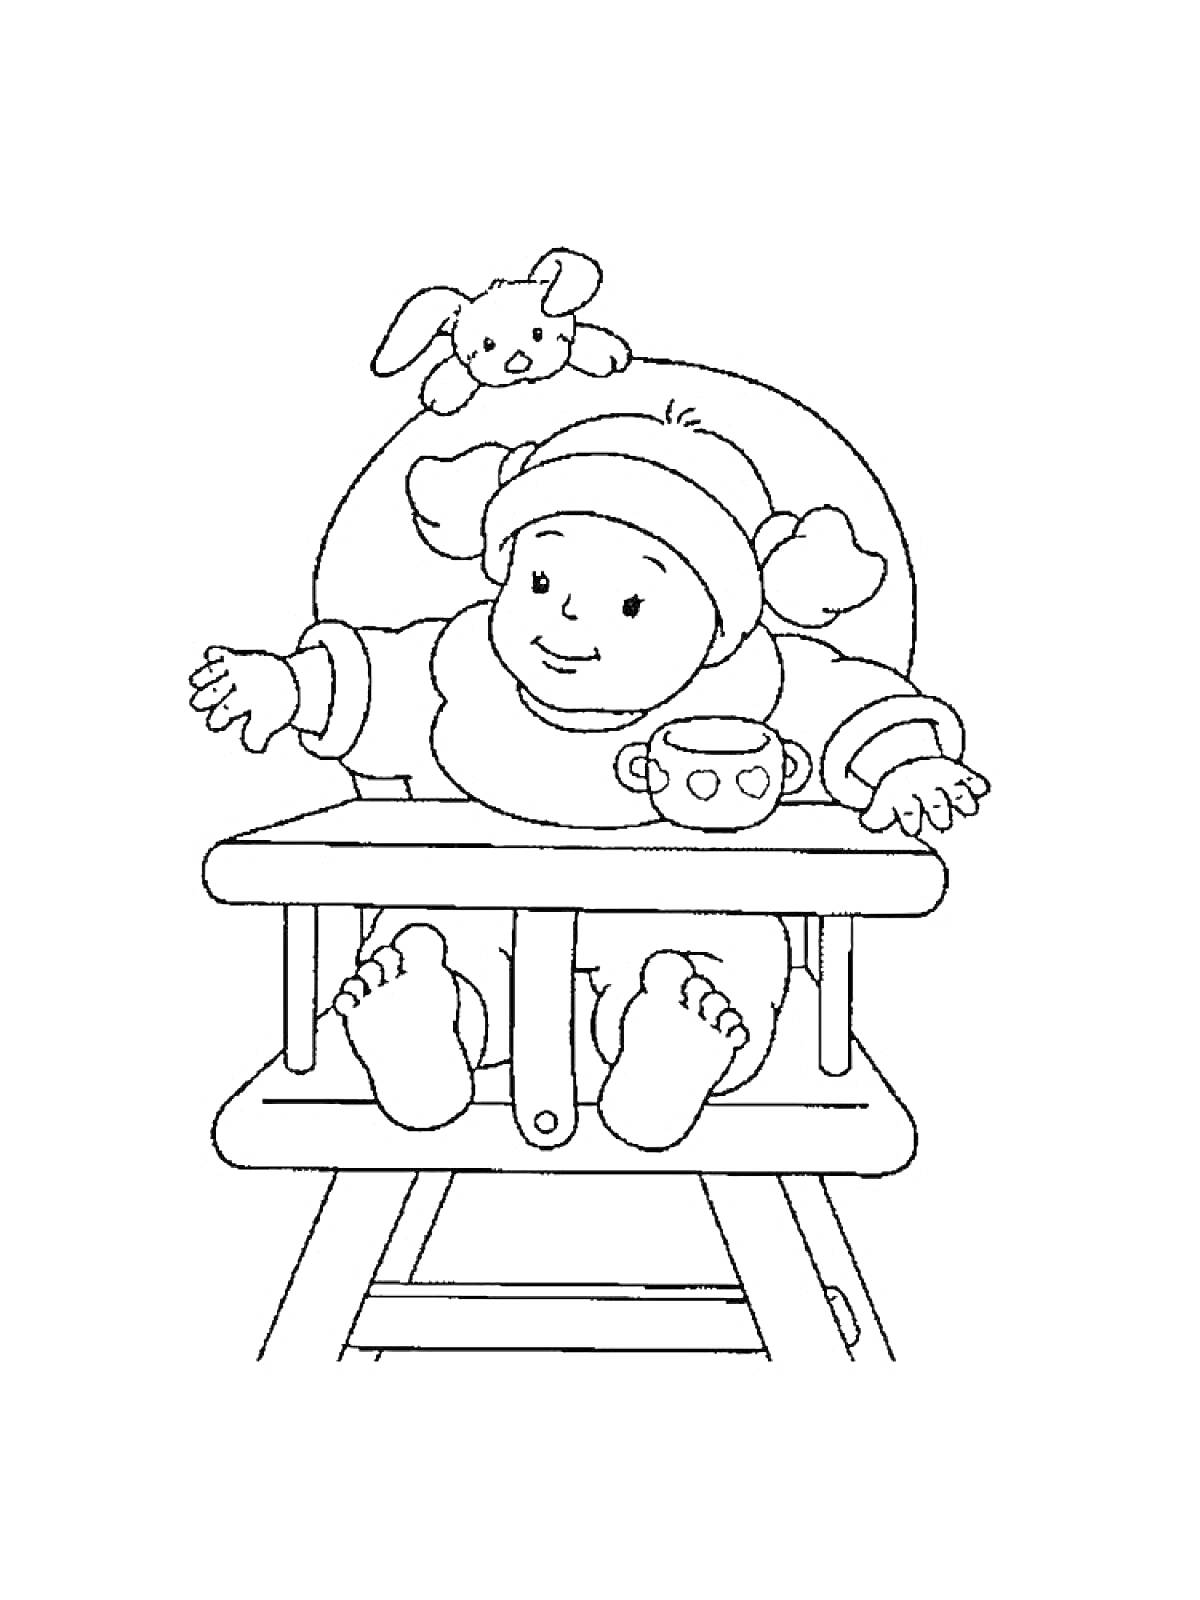 Раскраска Младенец в детском стульчике с игрушкой кроликом и чашкой